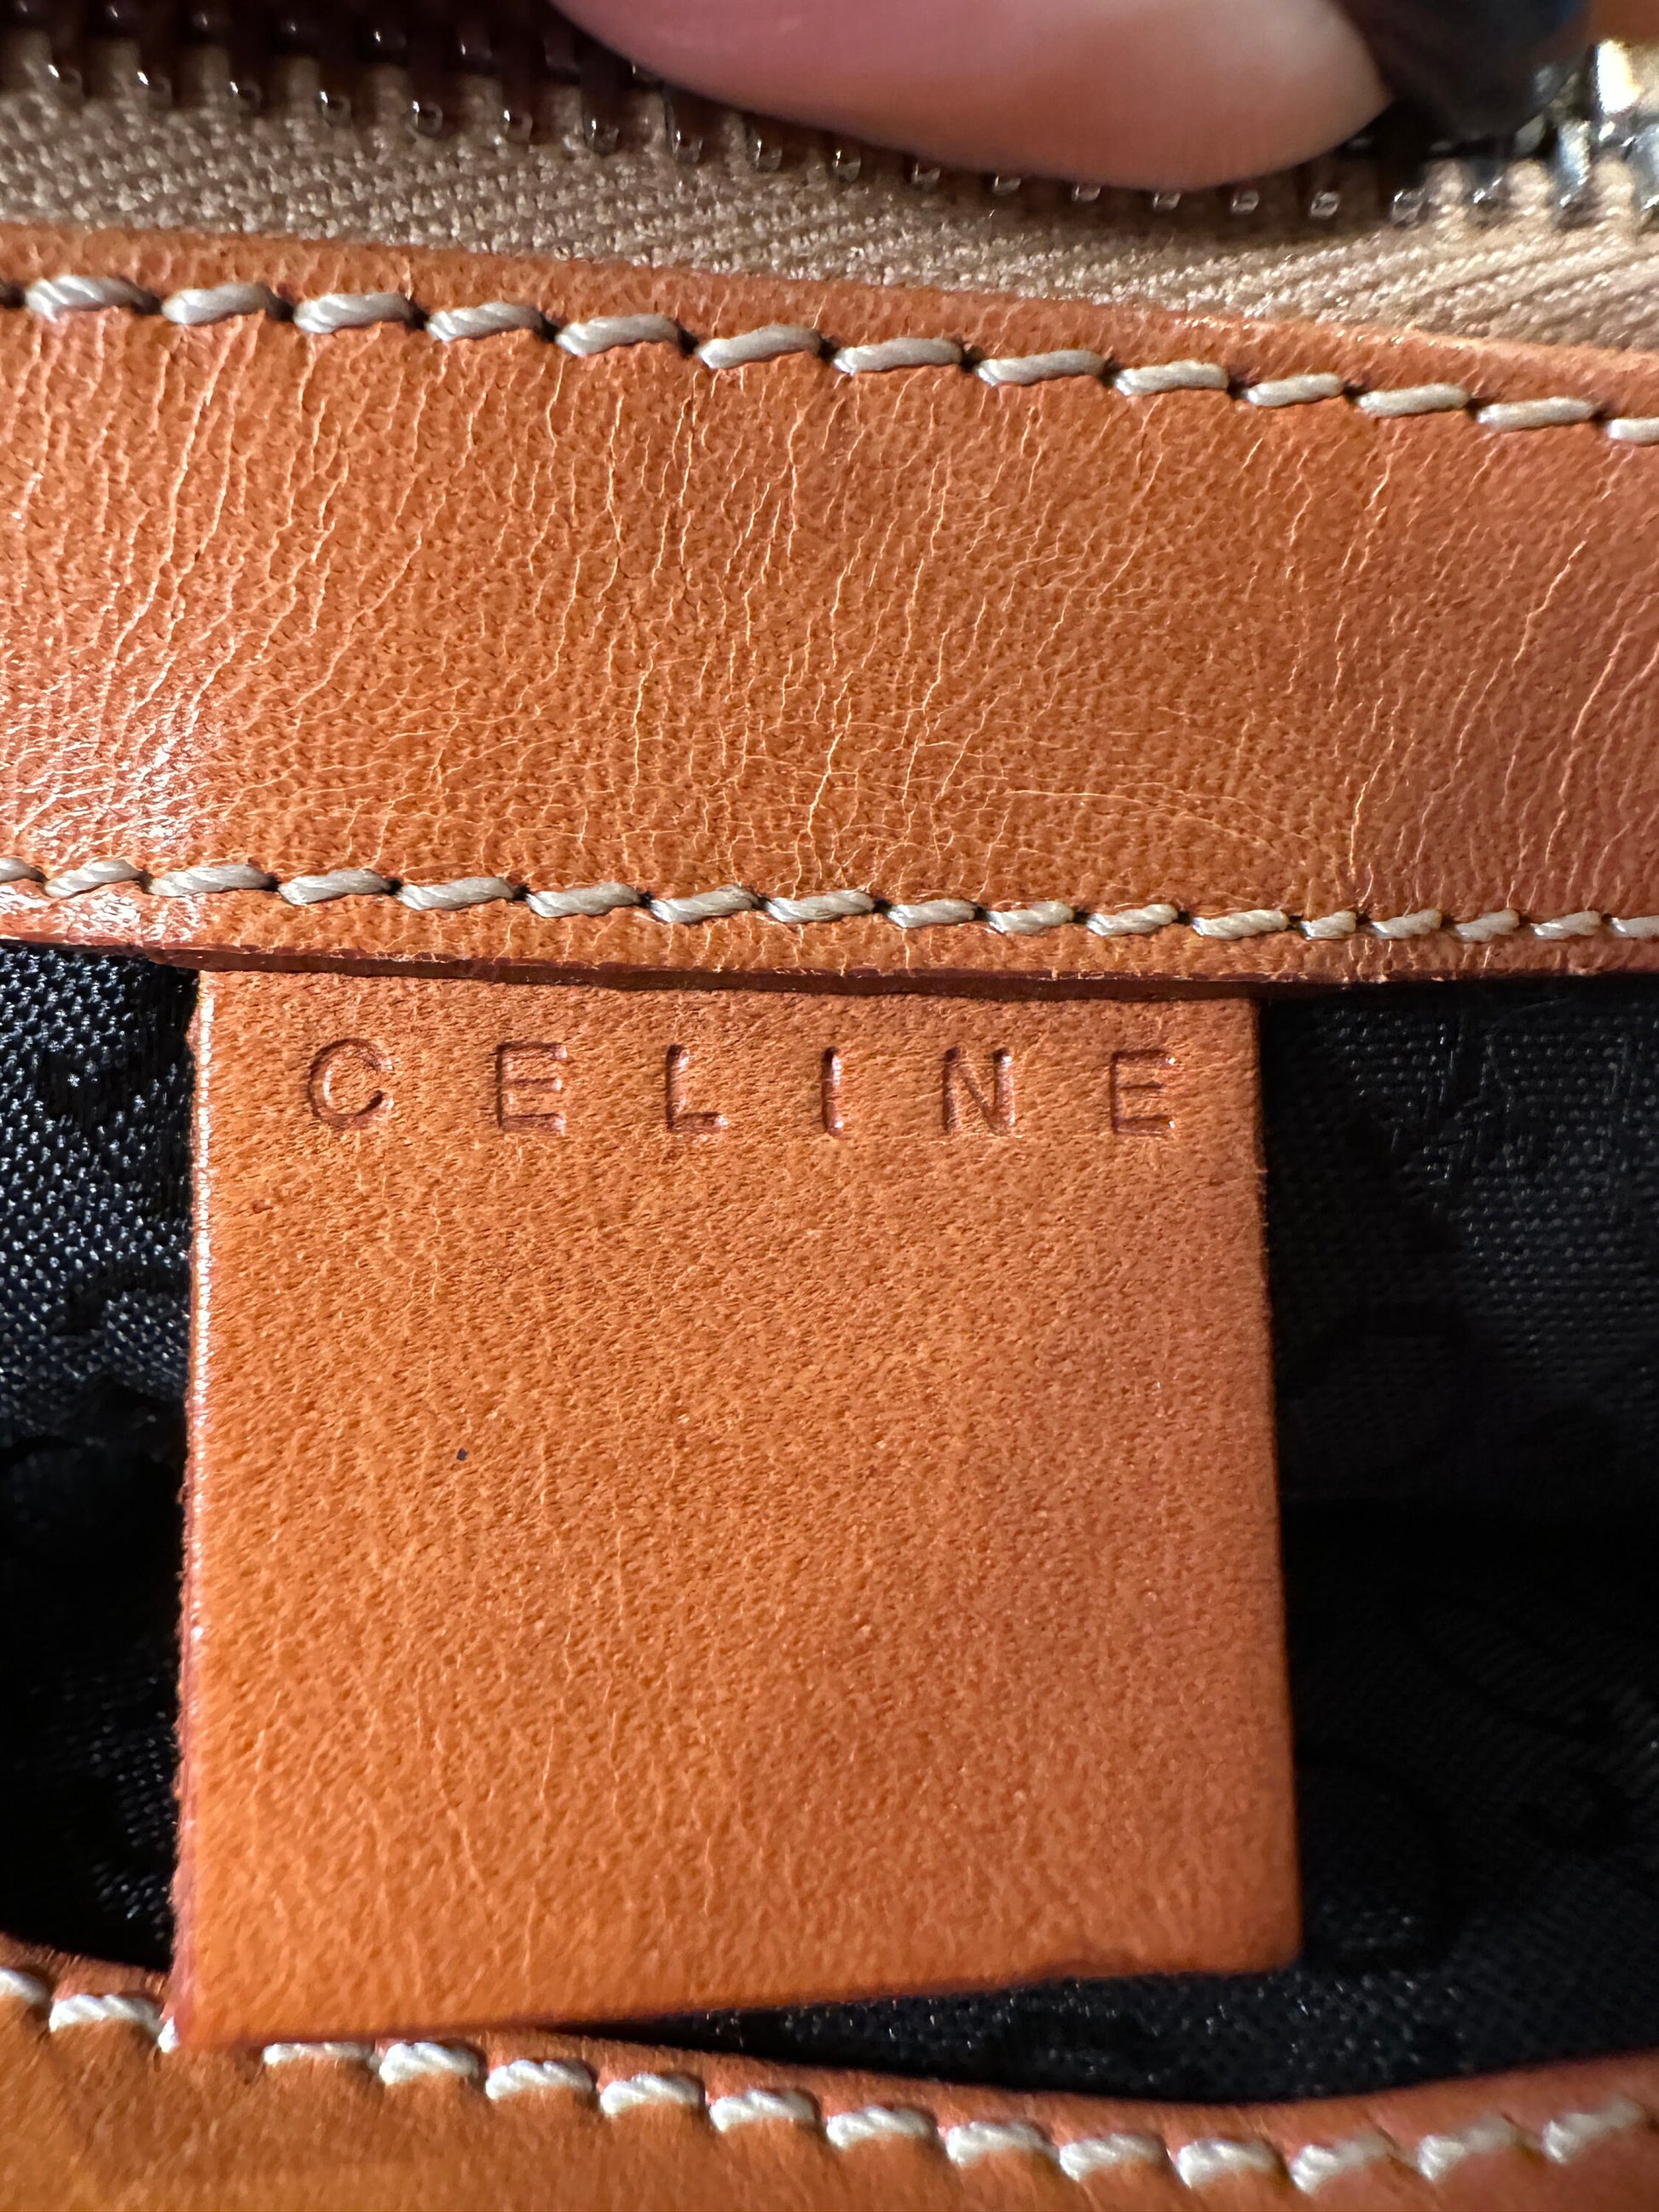 CELINE VINTAGE 100% Authentic Genuine, Double Handle Monogram Handbag, Black Suede, 1990's, Great Condition